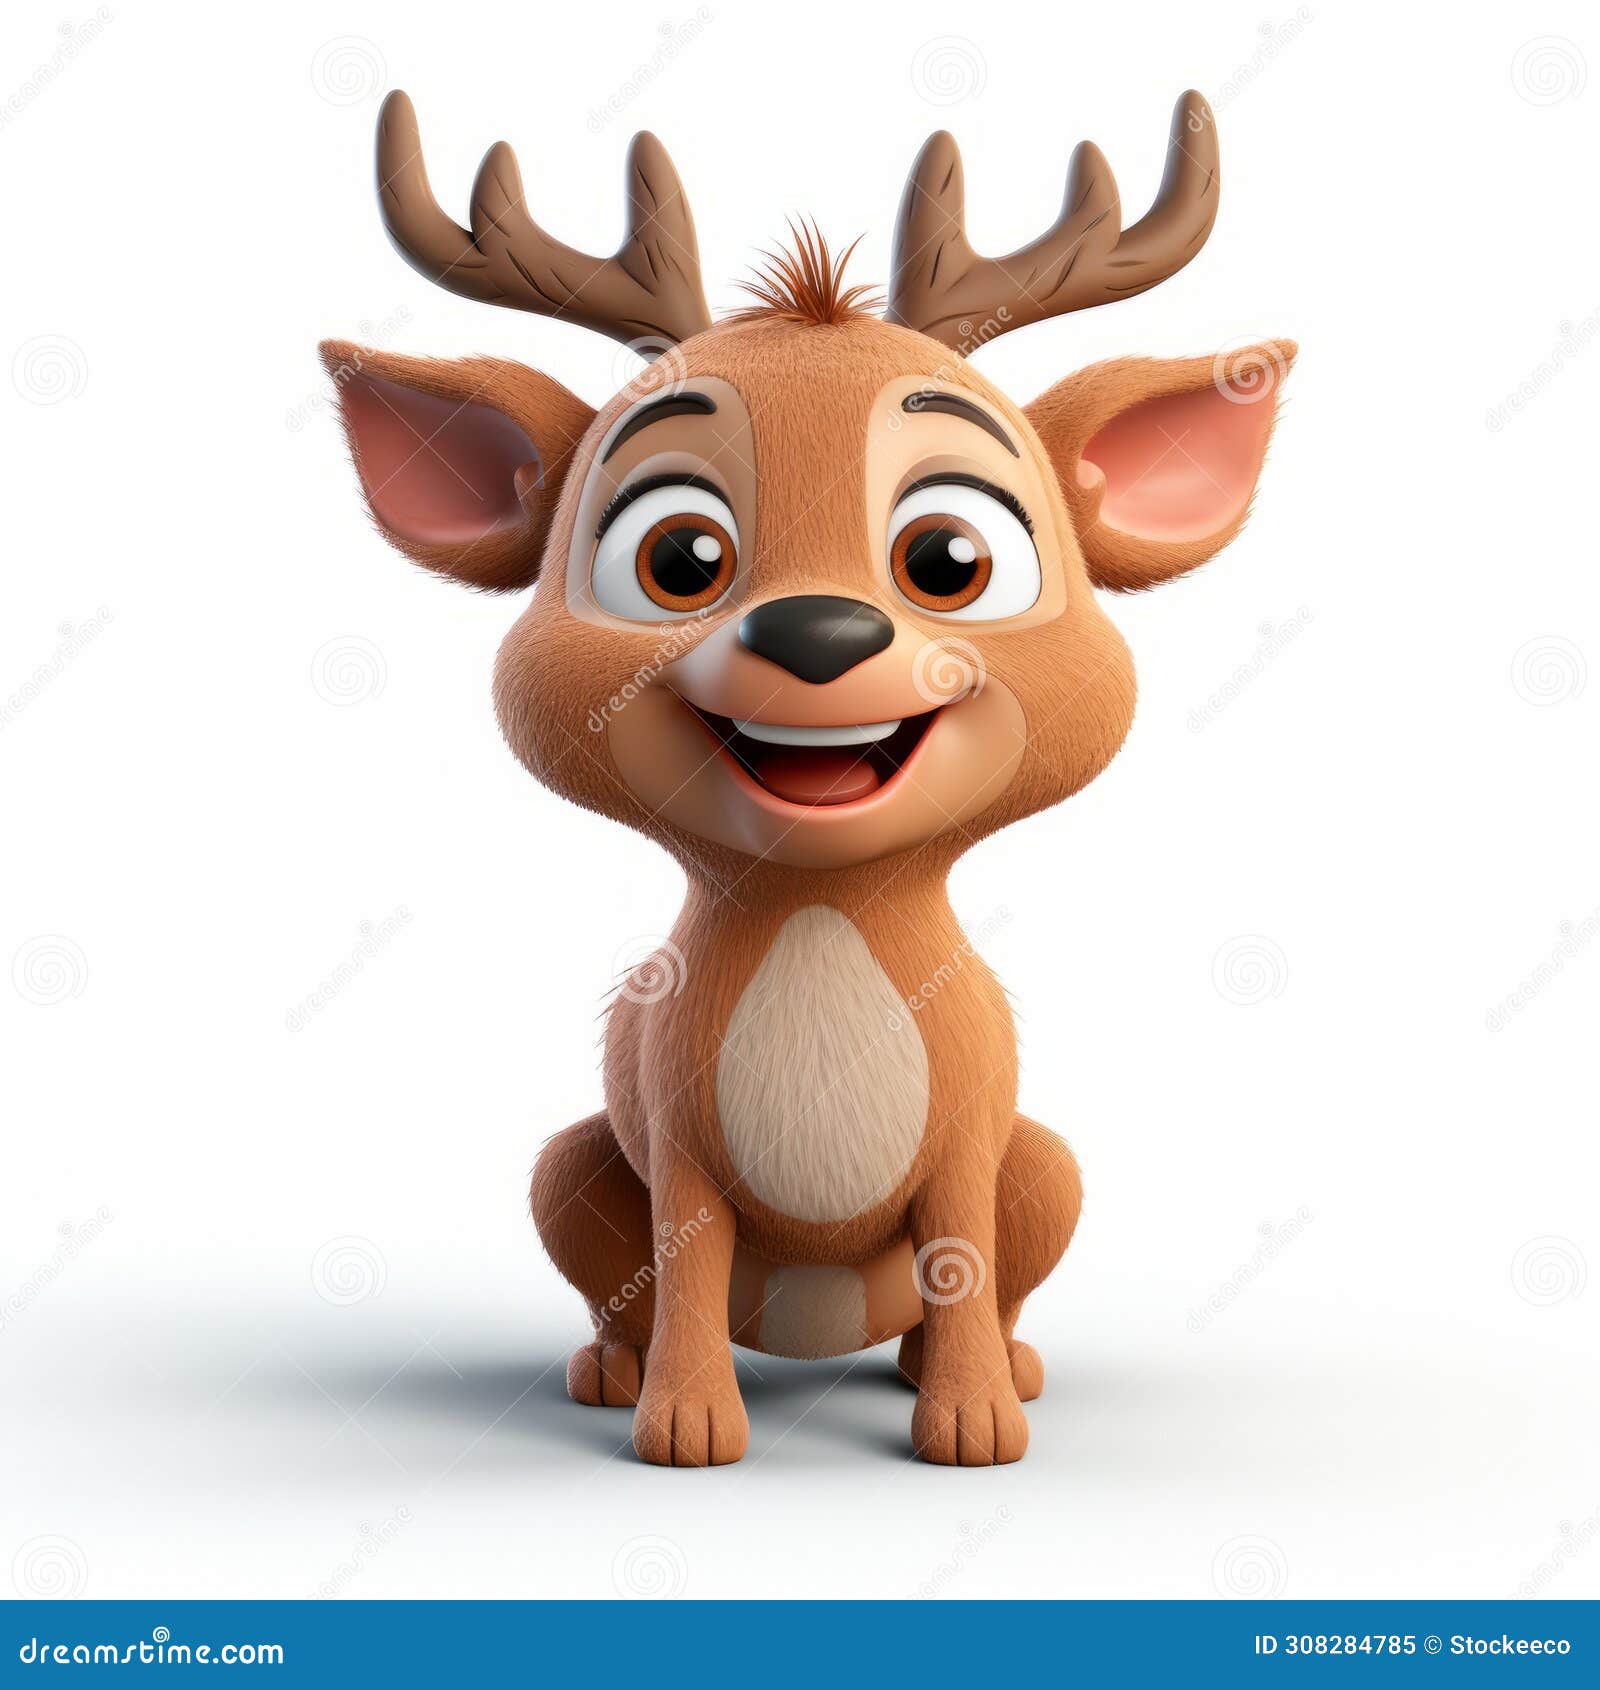 cute cartoon deer smiling in photorealistic 3d clay render